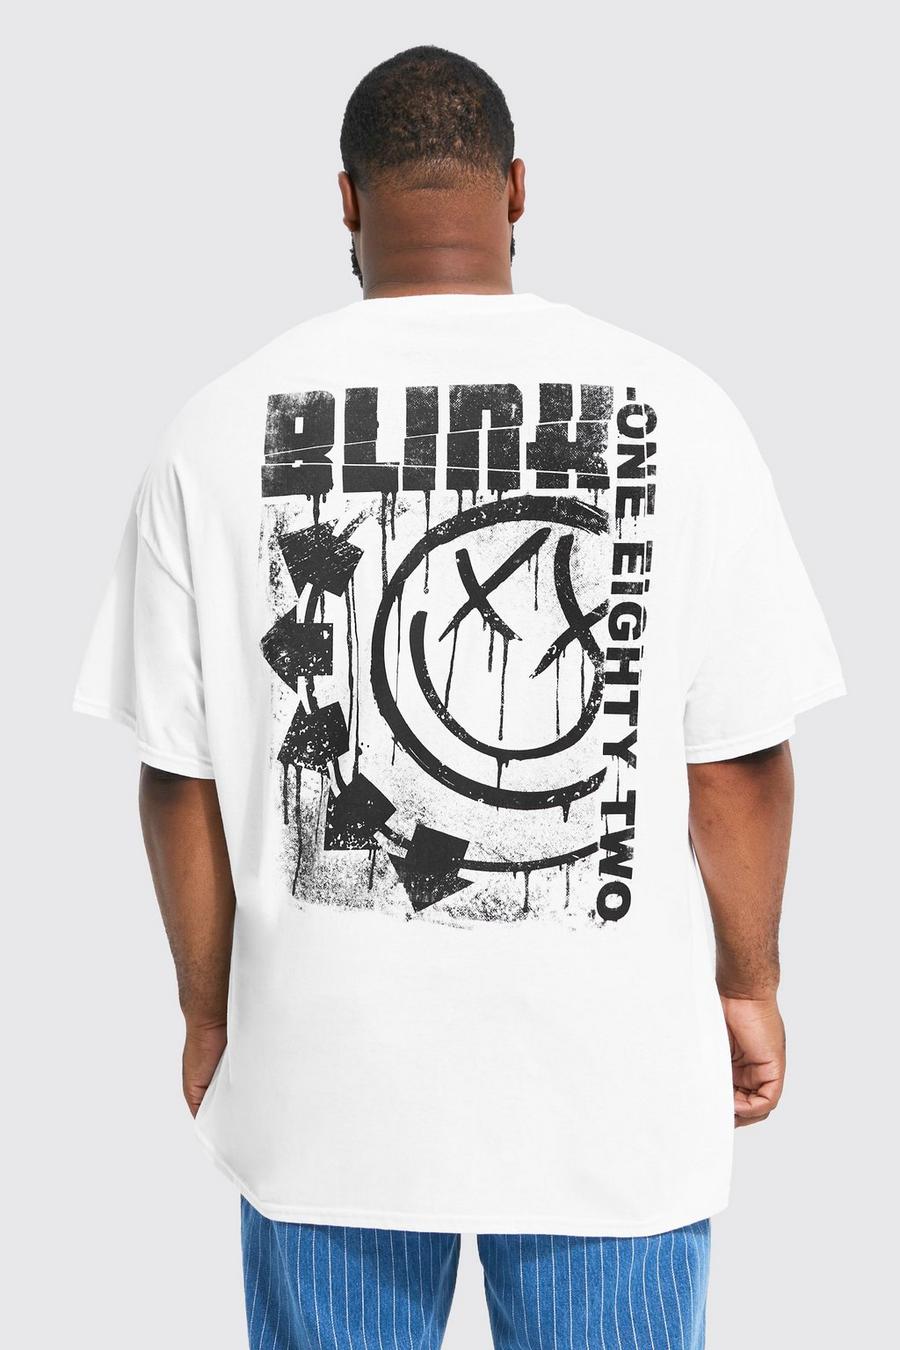 White Plus - Blink 182 T-shirt